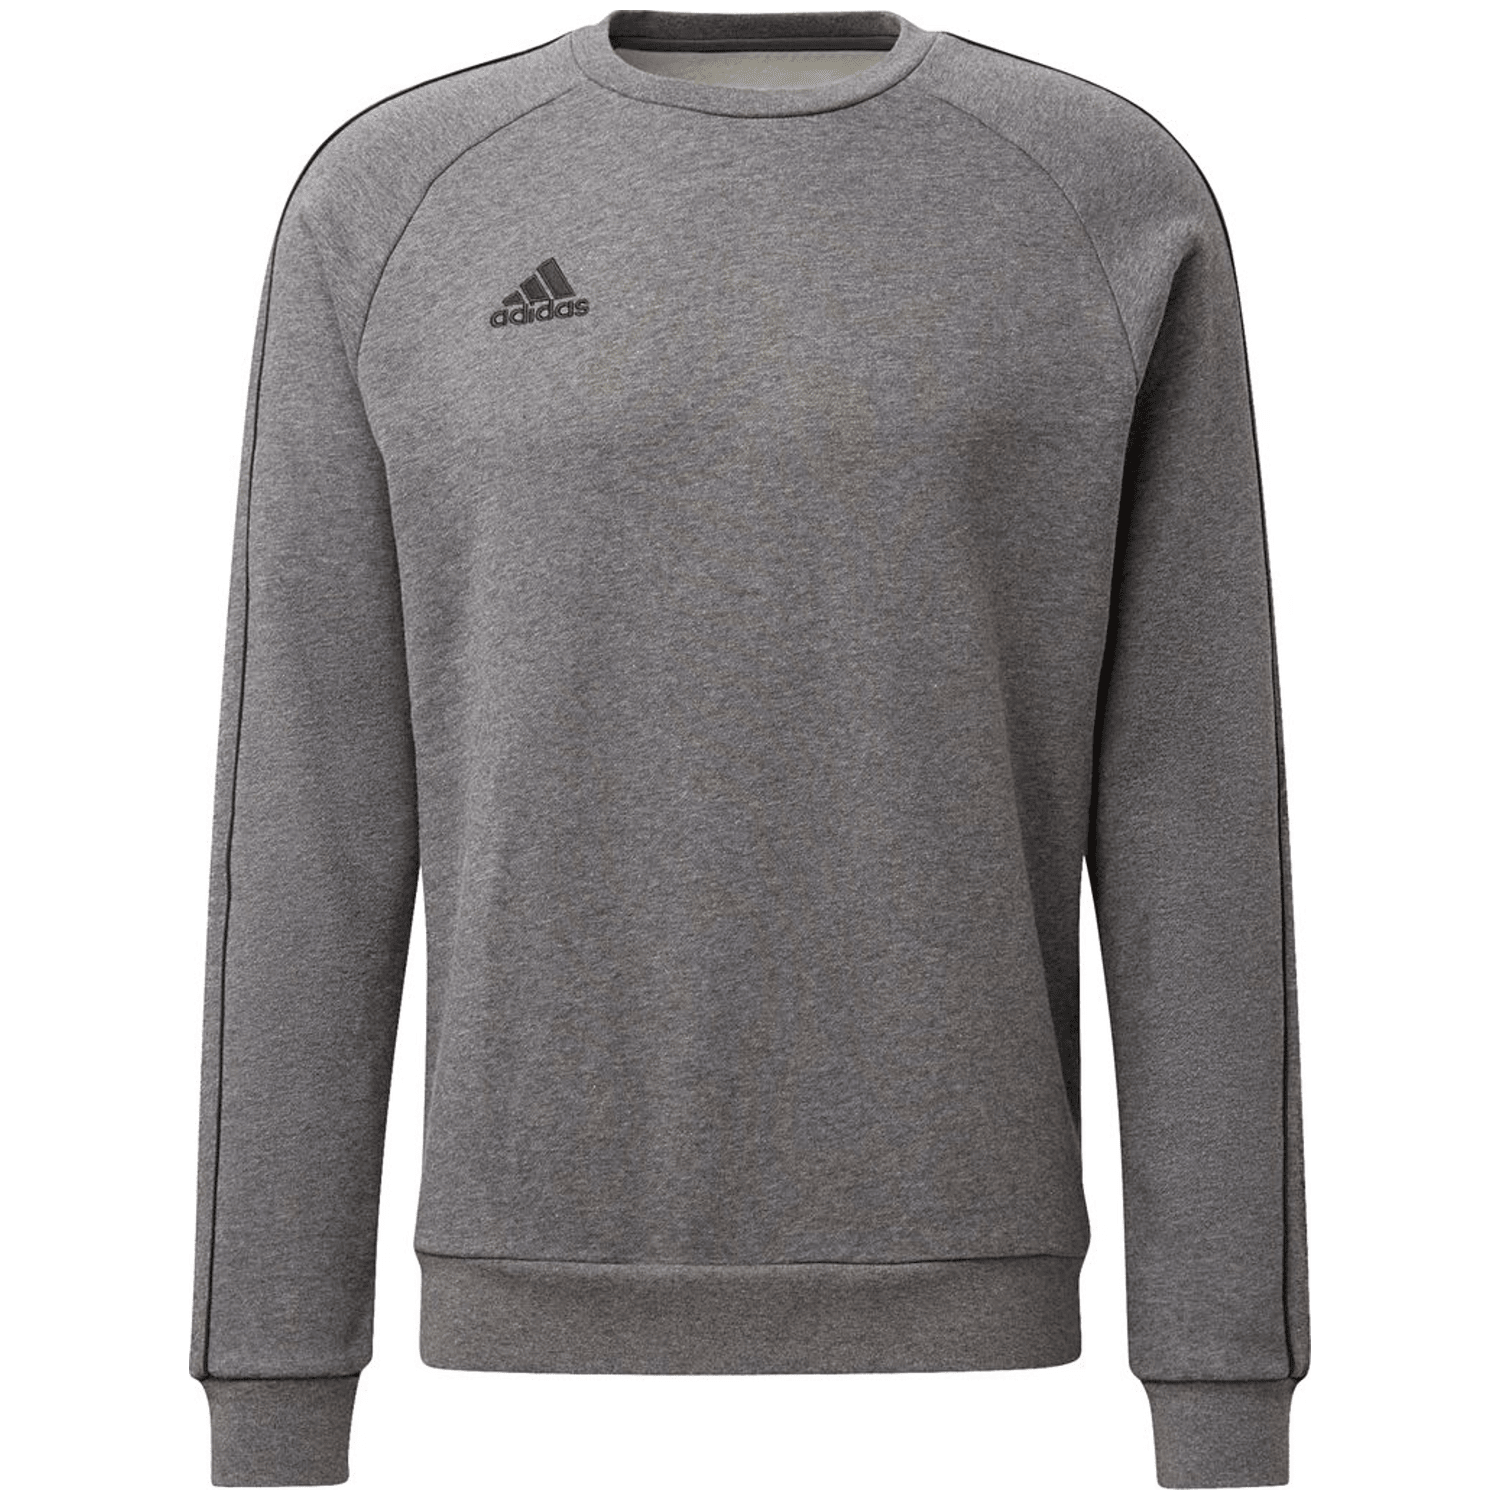 Adidas Core 18 Sweatshirt Herren